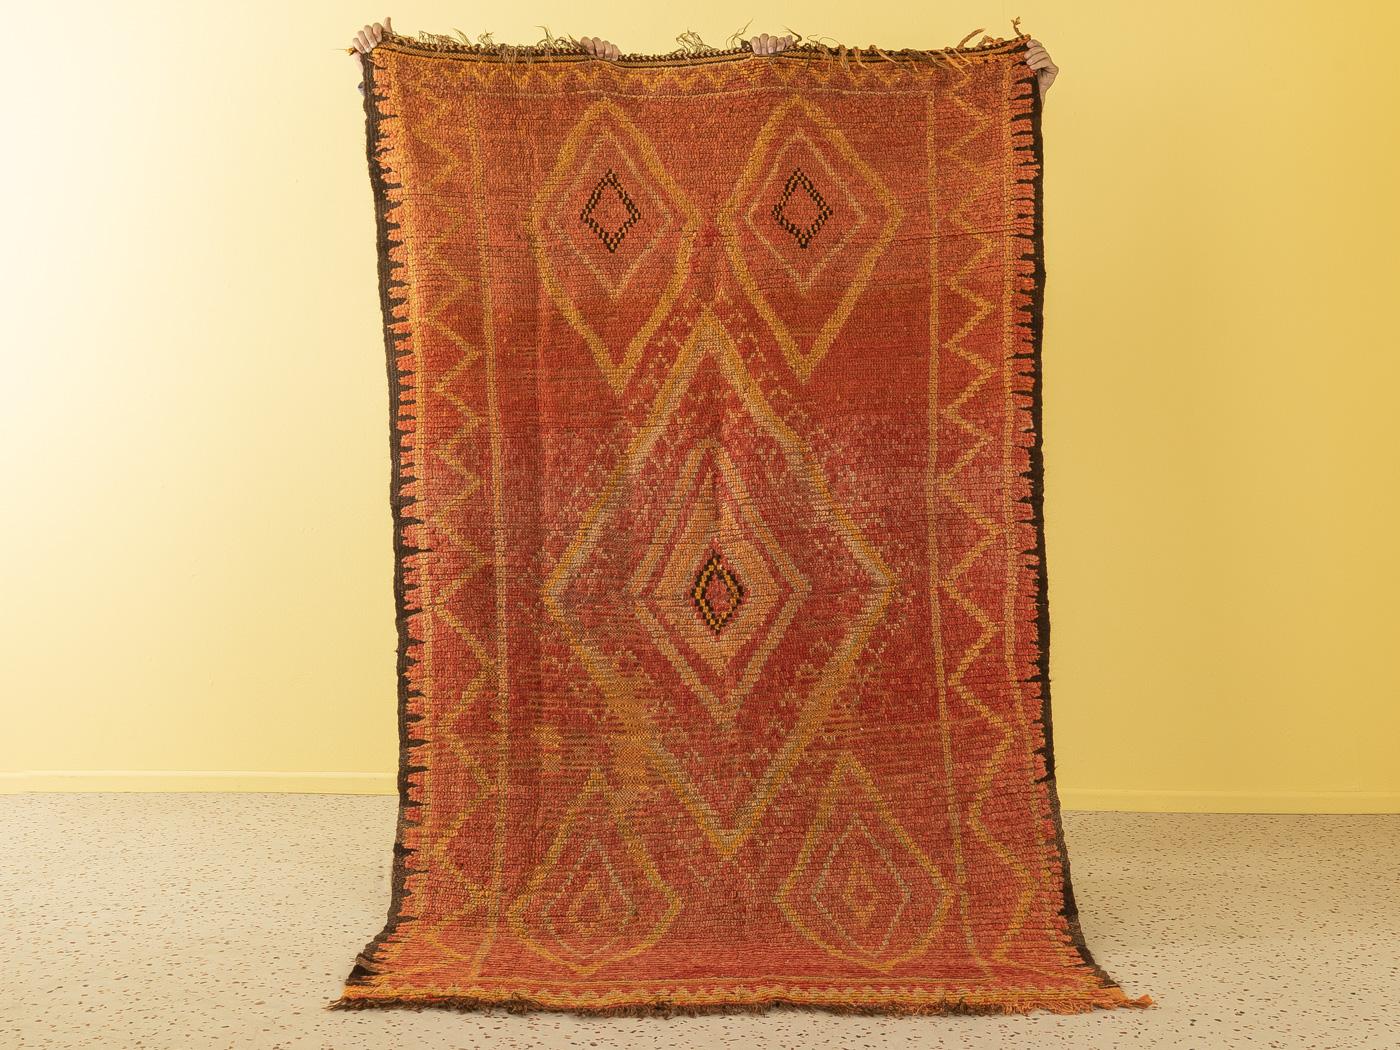 Ce Rehamna Vintage est un tapis 100% laine - doux et confortable sous les pieds. Nos tapis berbères sont fabriqués à la main, un nœud à la fois. Chacun de nos tapis berbères est une pièce unique de longue durée, créée de manière durable avec de la